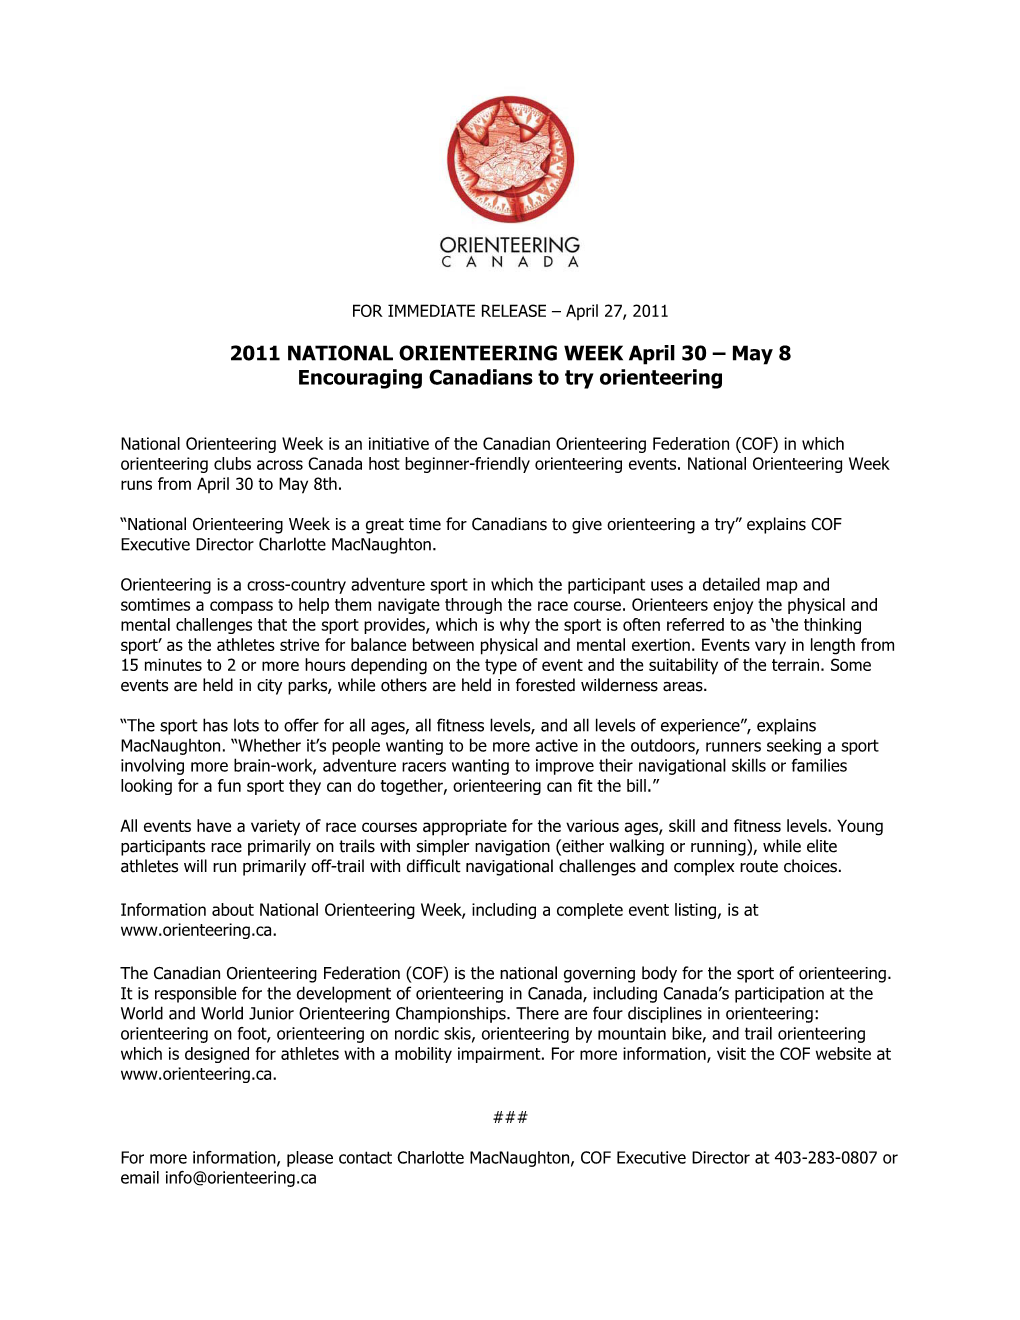 2011 NATIONAL ORIENTEERING WEEK April 30 – May 8 Encouraging Canadians to Try Orienteering